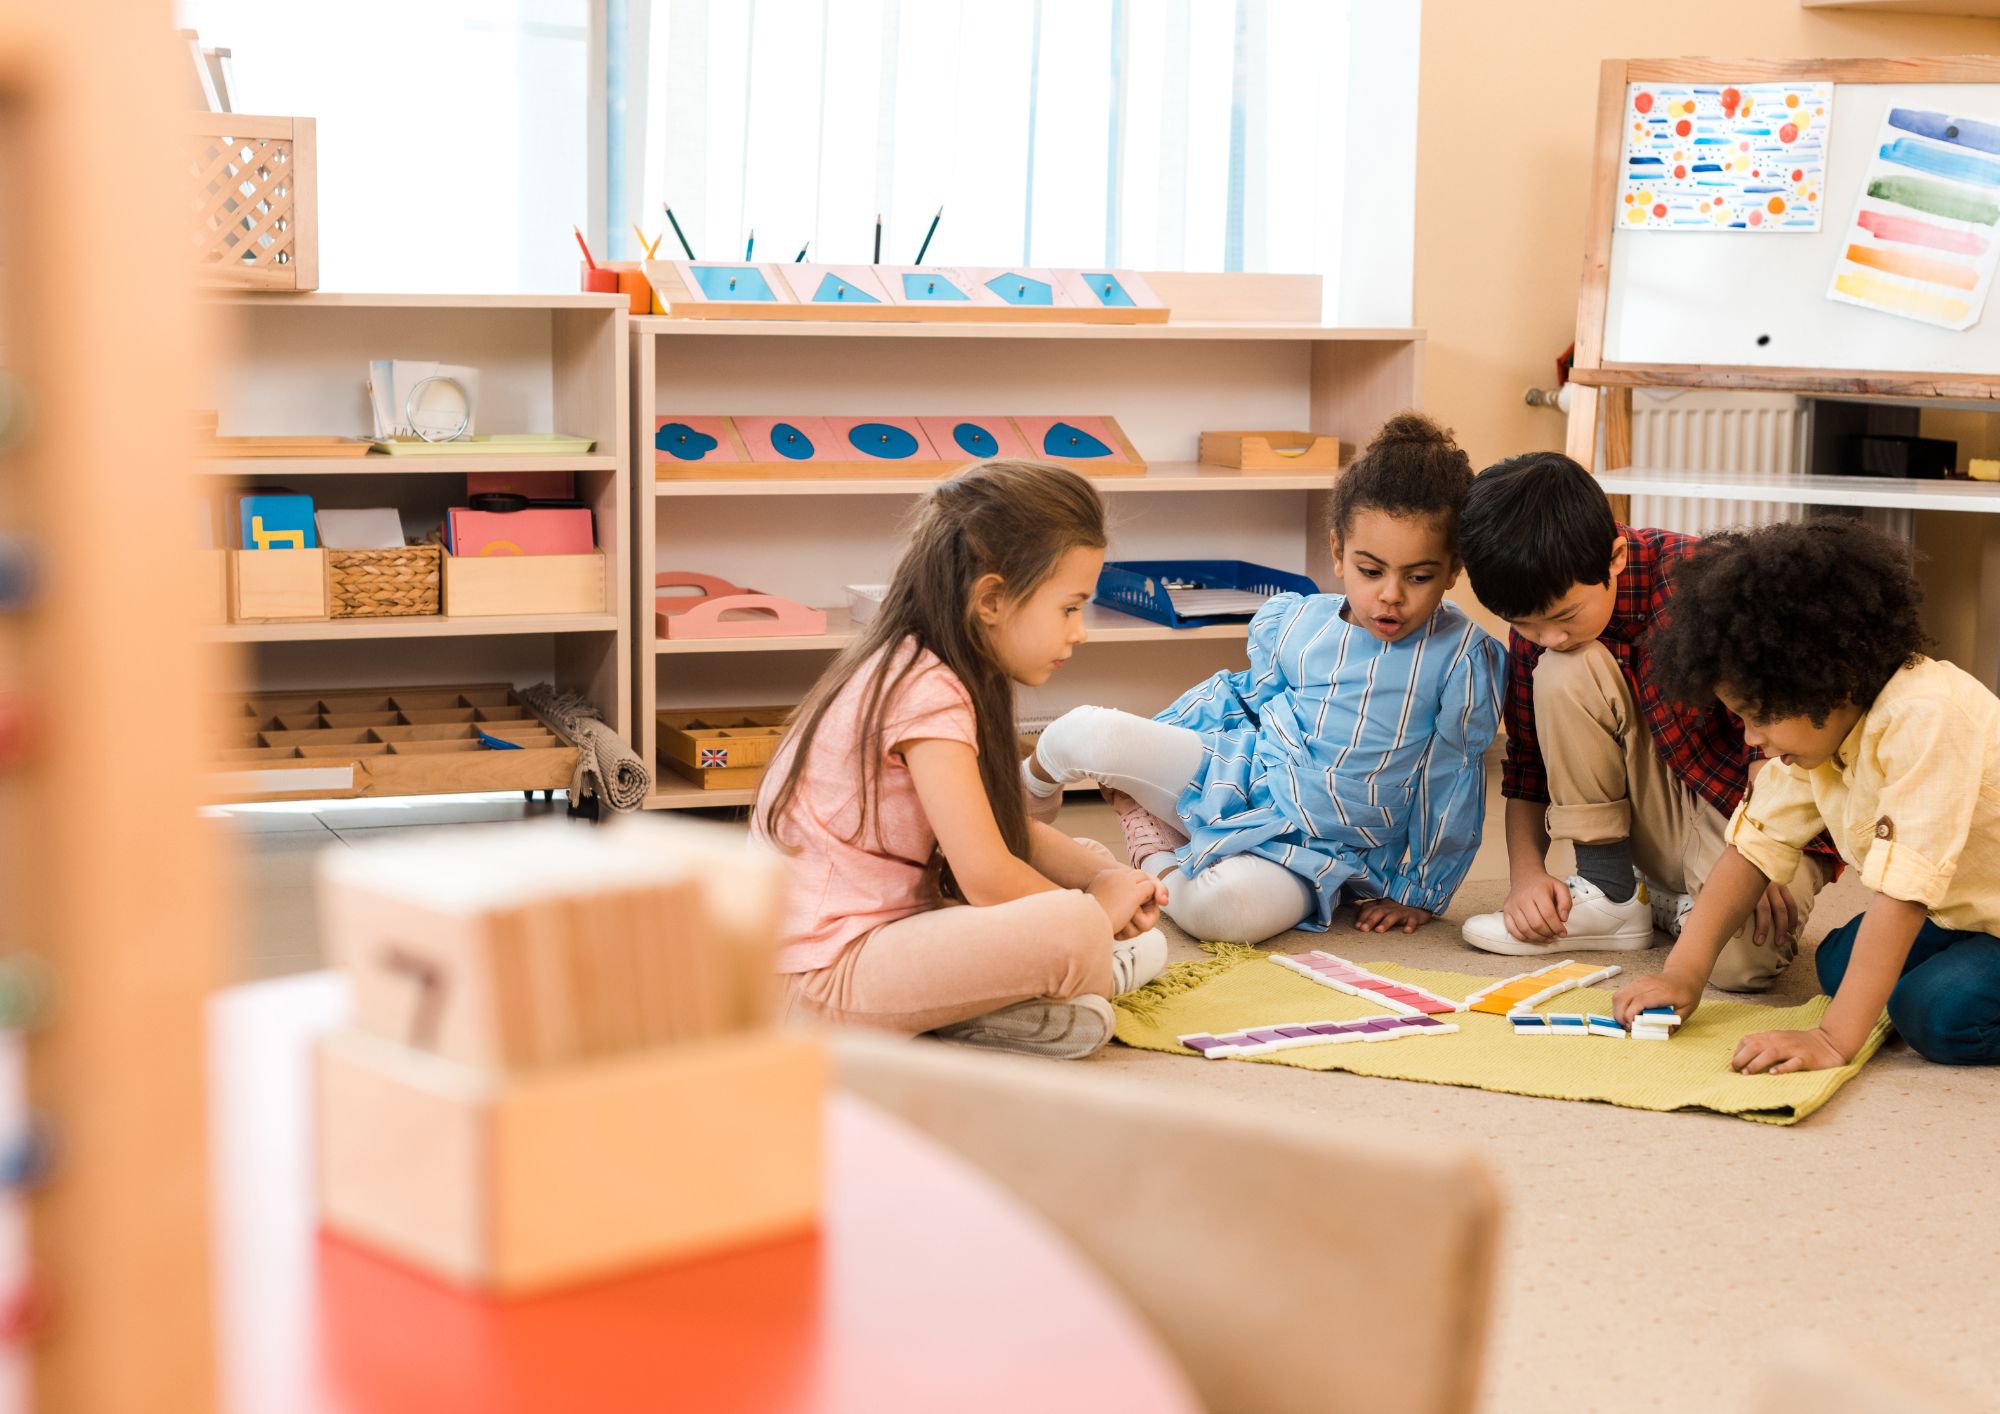 Les récompenses pour l'enfant sont-elles une bonne idée? – Montessori Docs